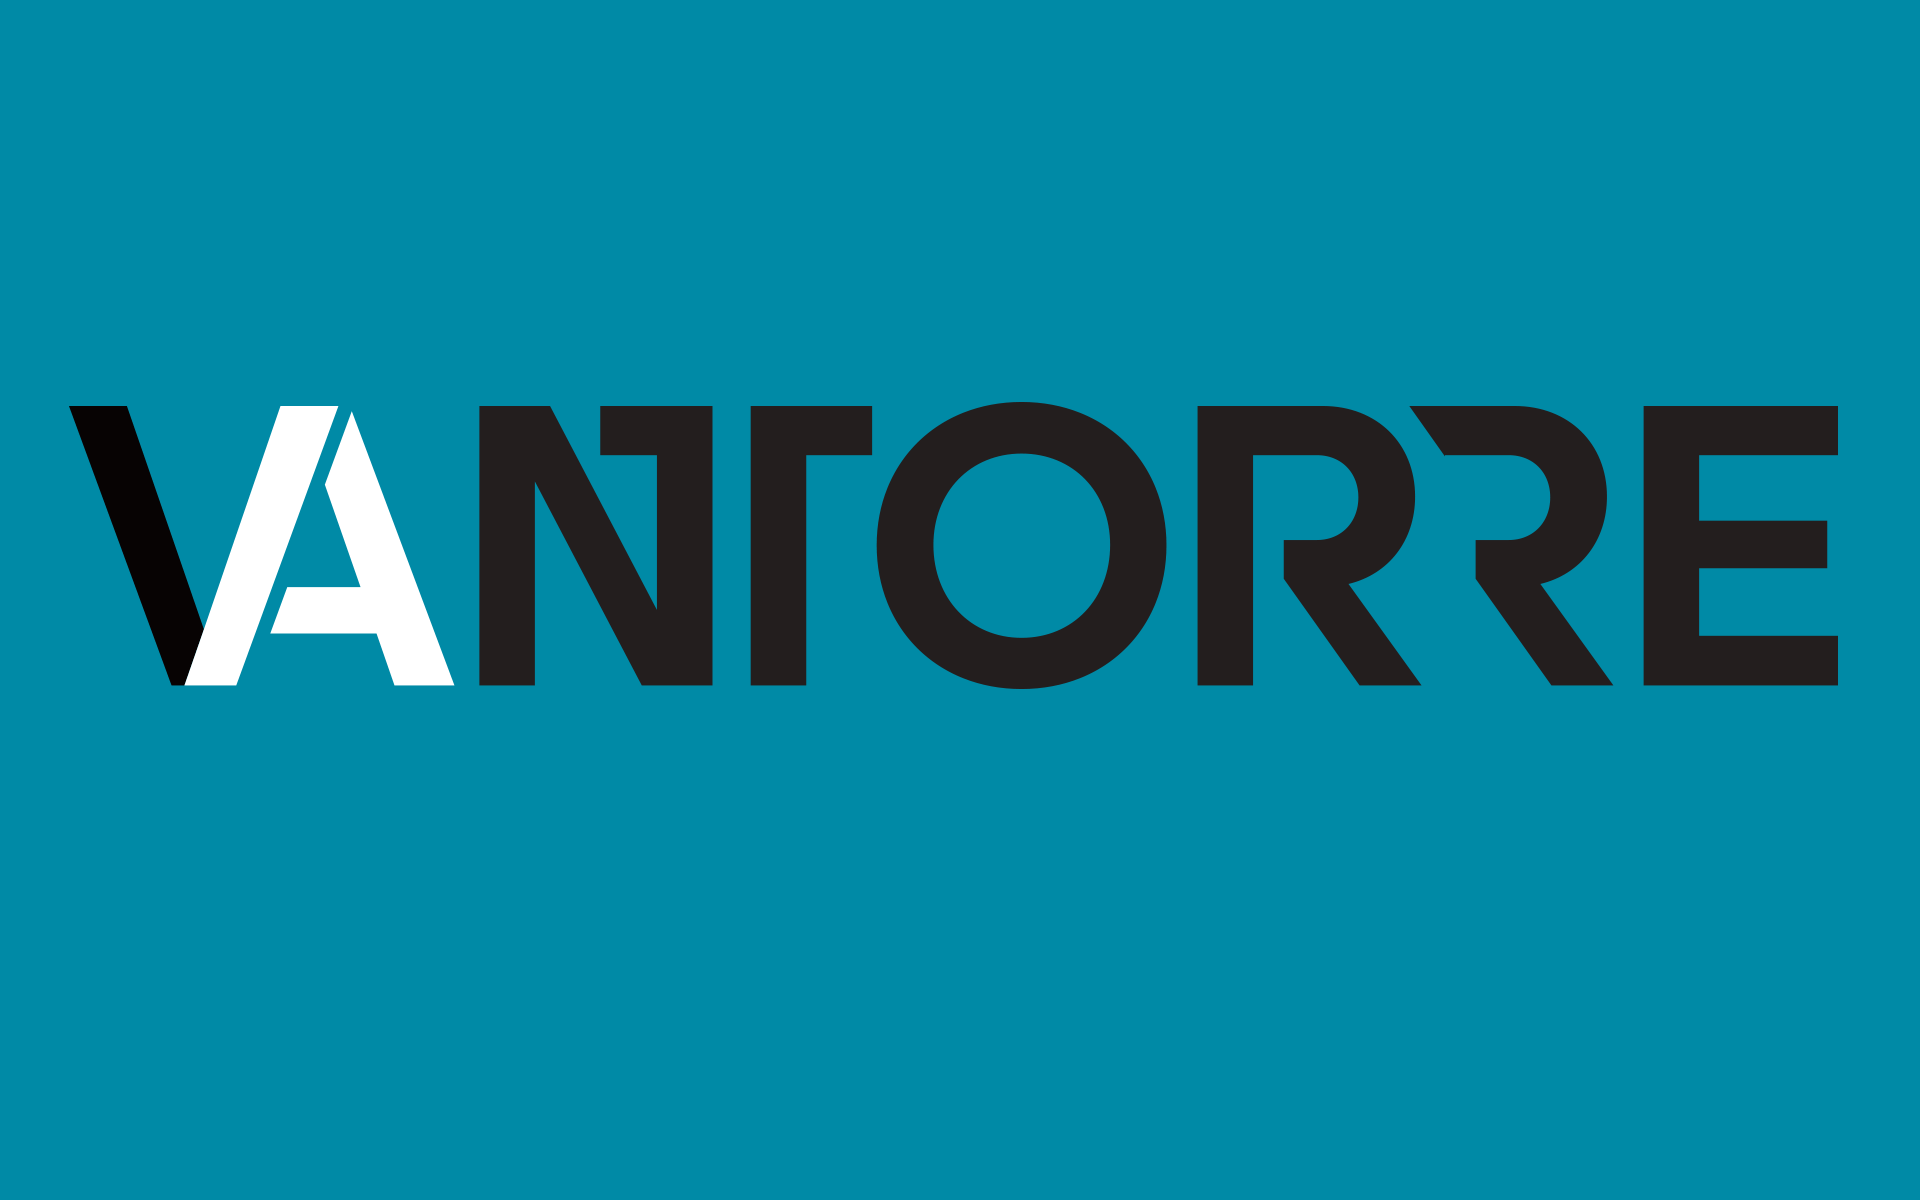 Andreas Vantorre, Logotype, Wortmarke